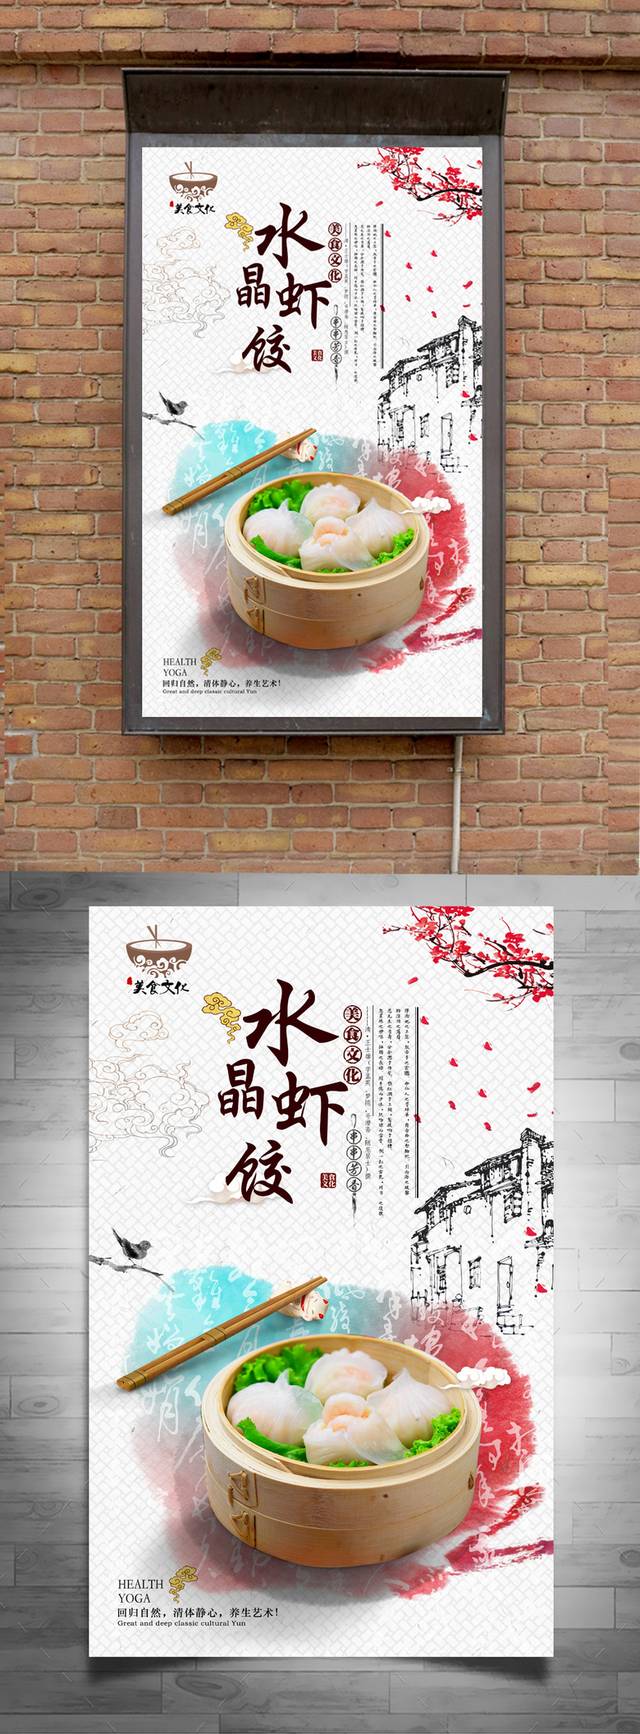 清新中国风水晶虾饺宣传海报设计psd